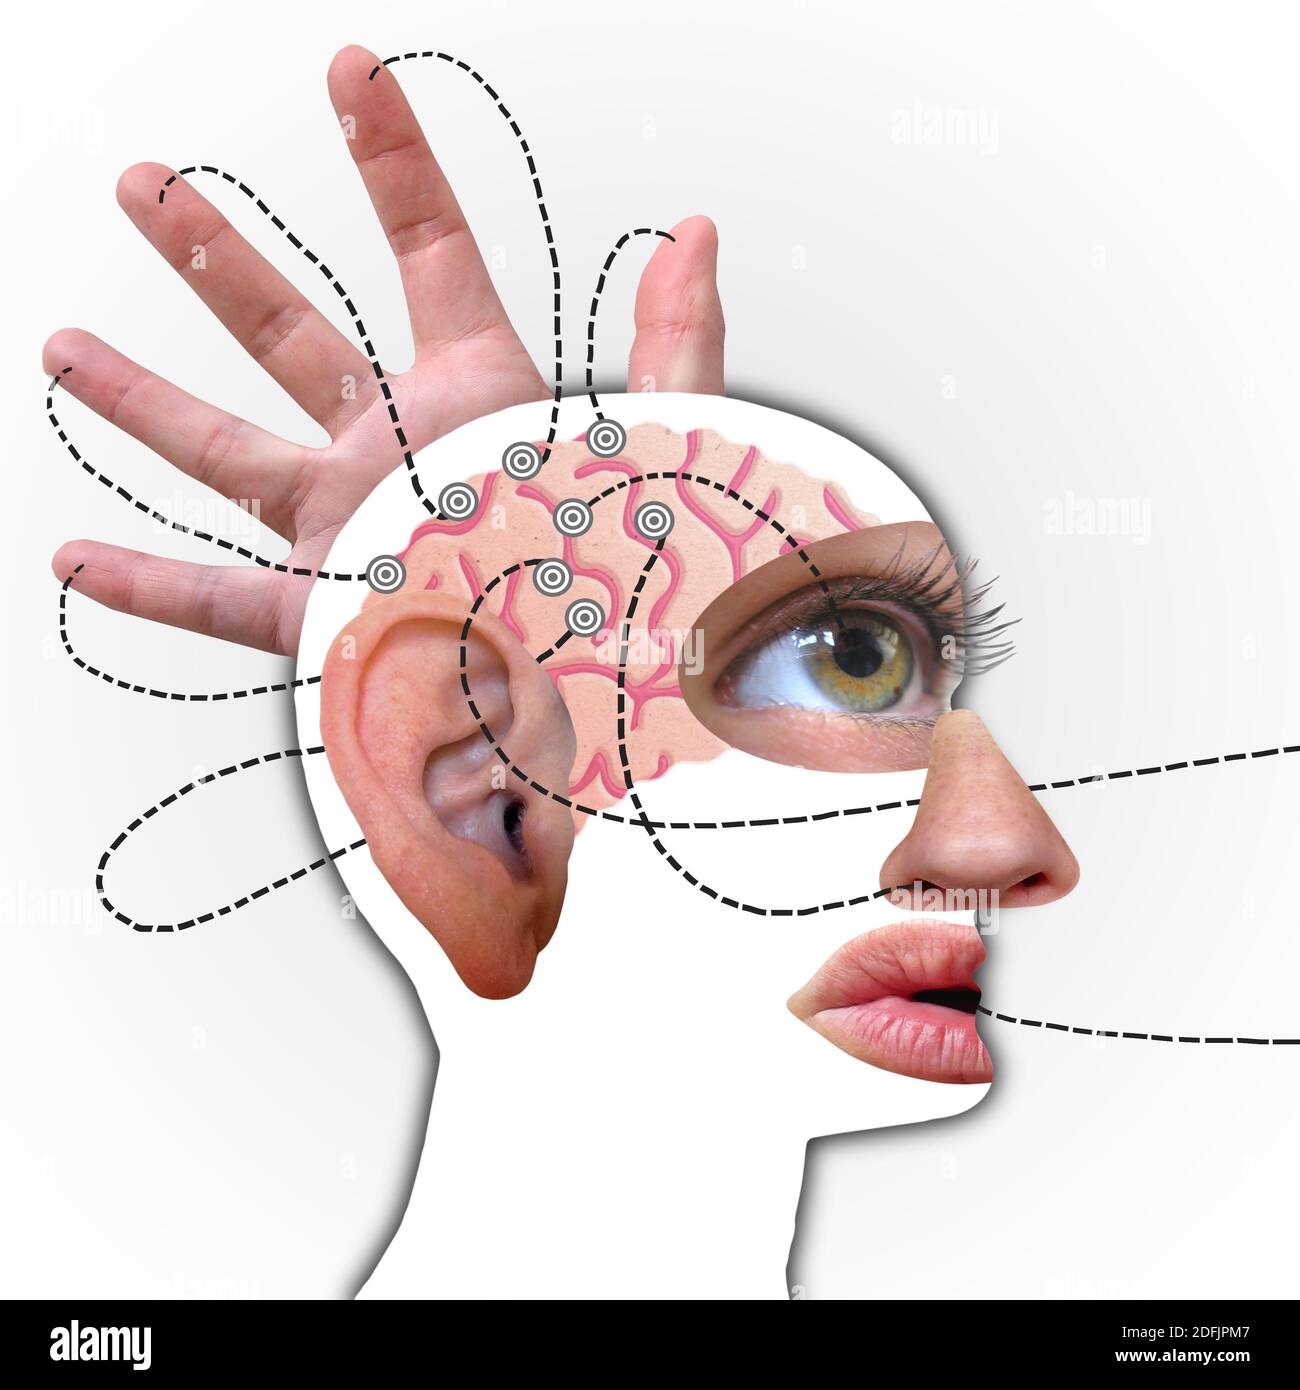 Le profil du cerveau humain, relié à cinq sens - Collage drôle Banque D'Images